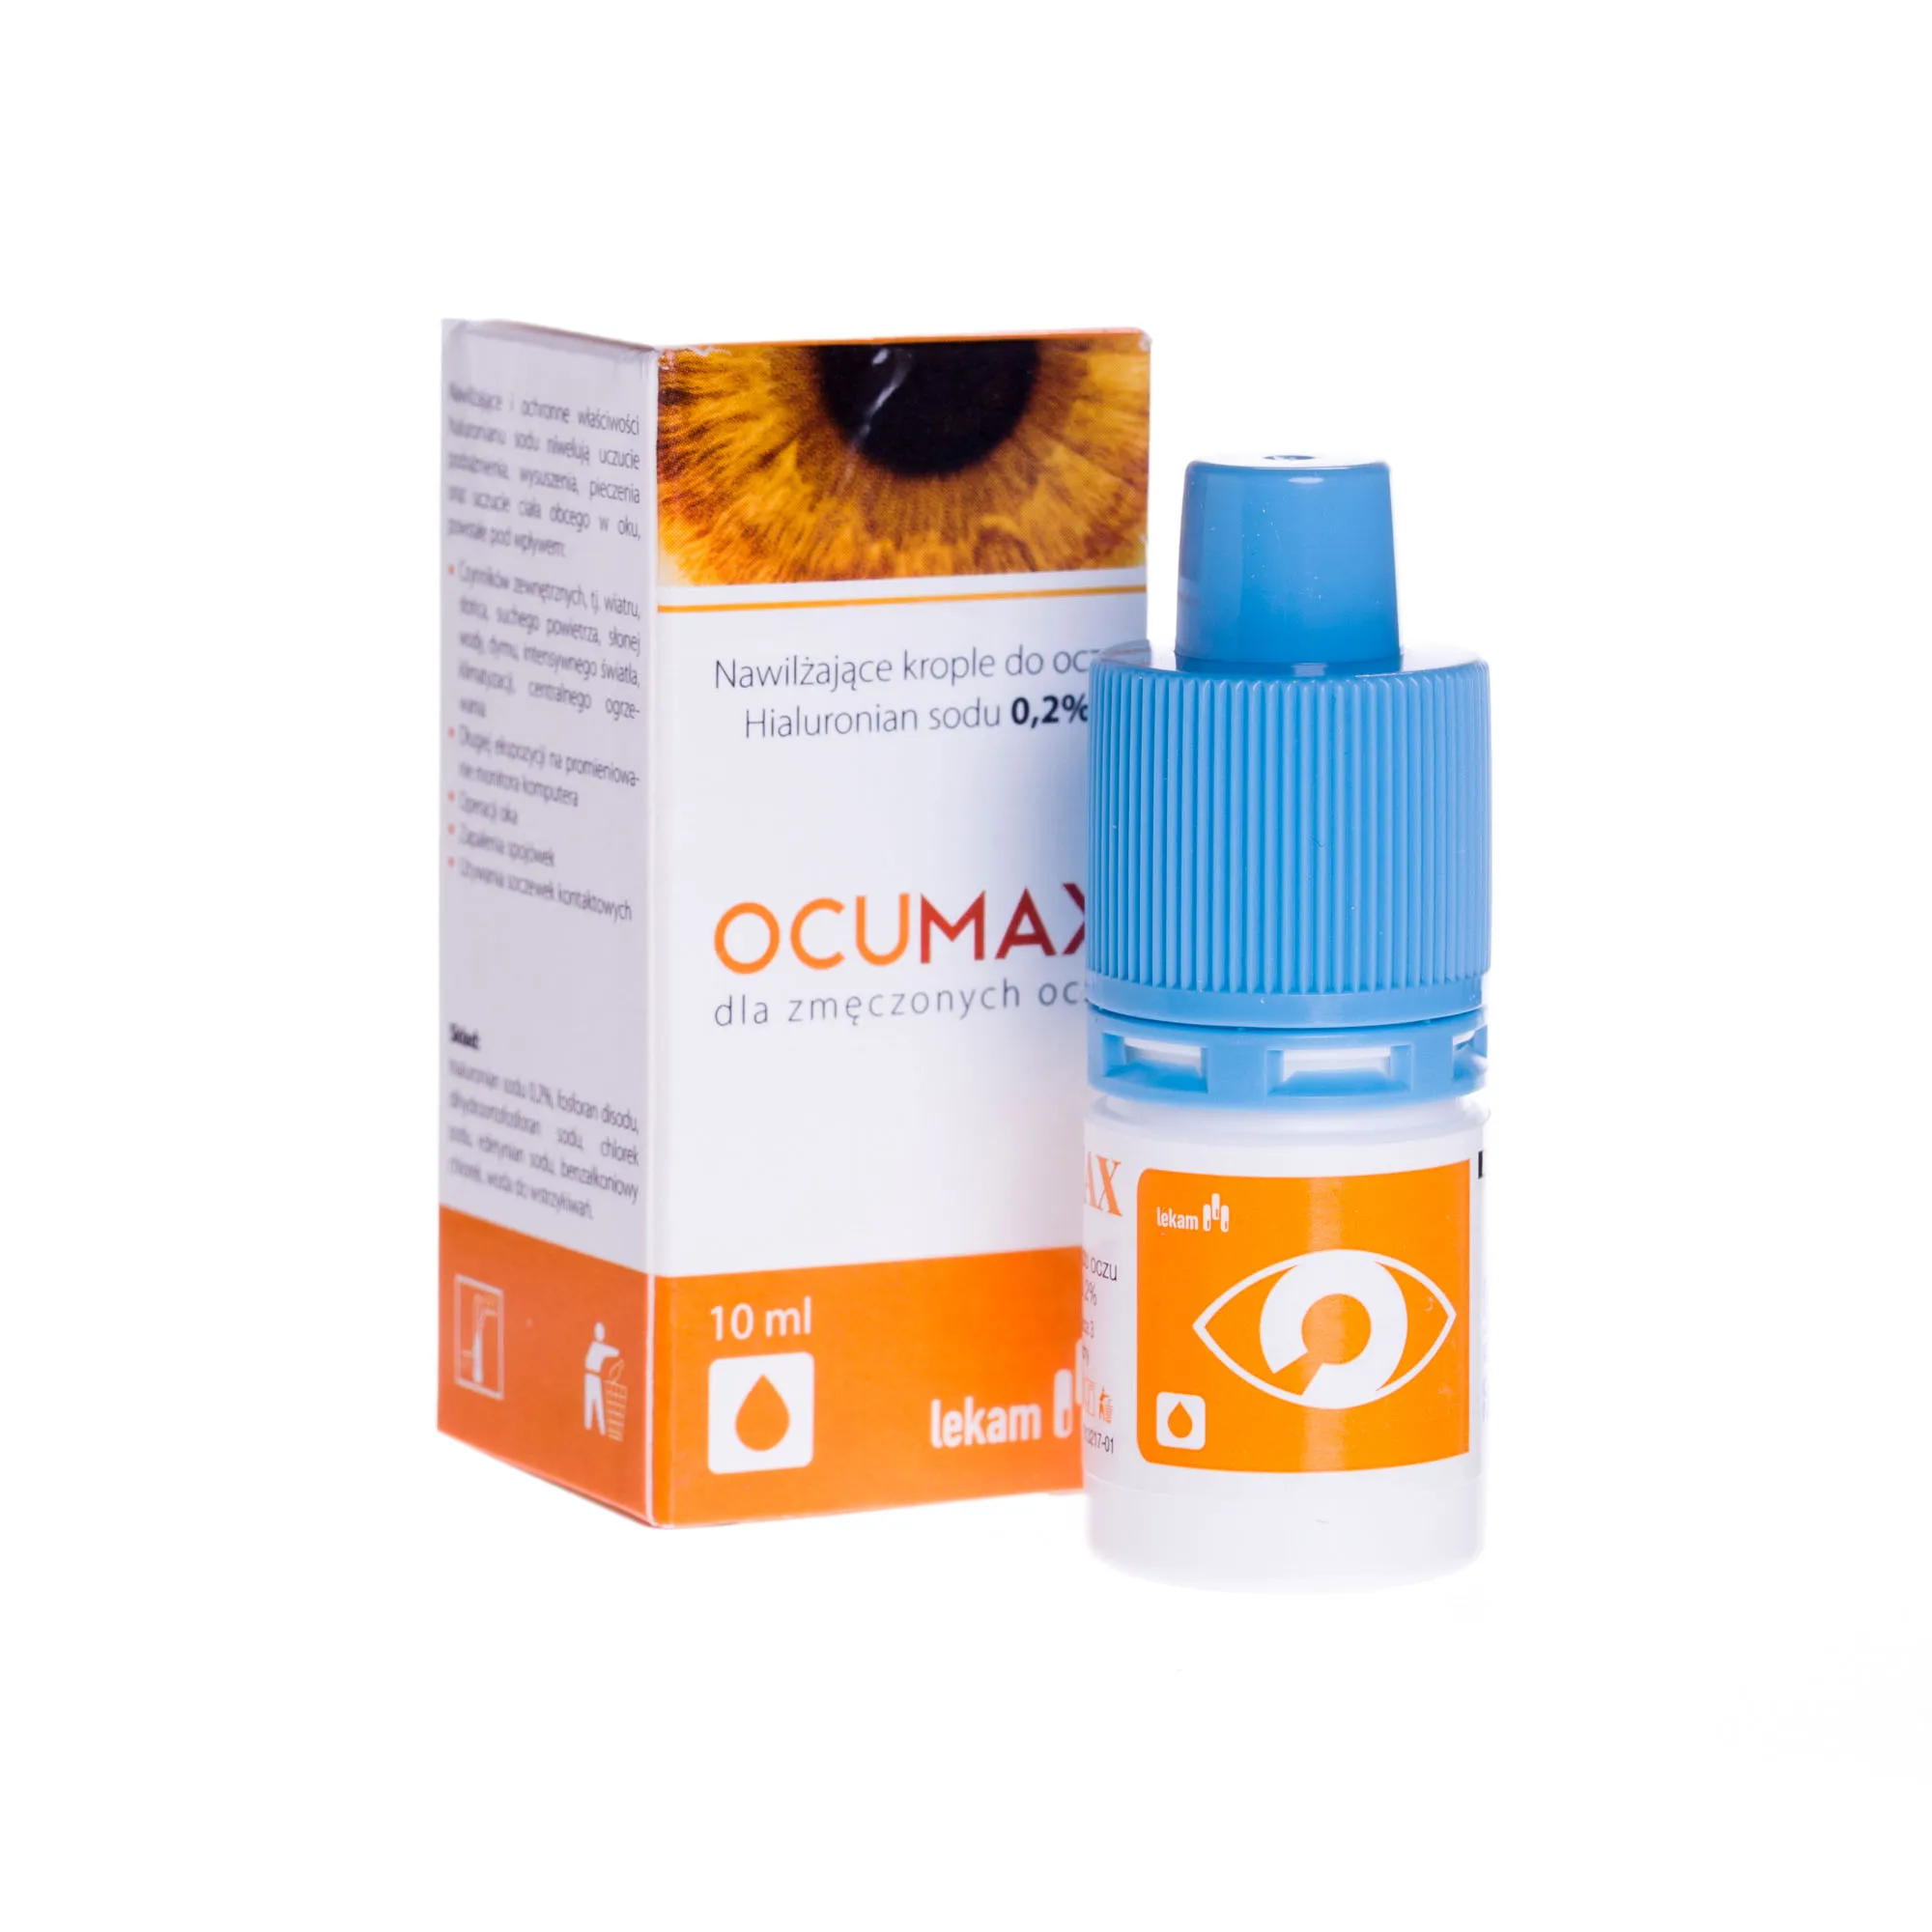 Ocumax dla zmęczonych oczu, 10 ml